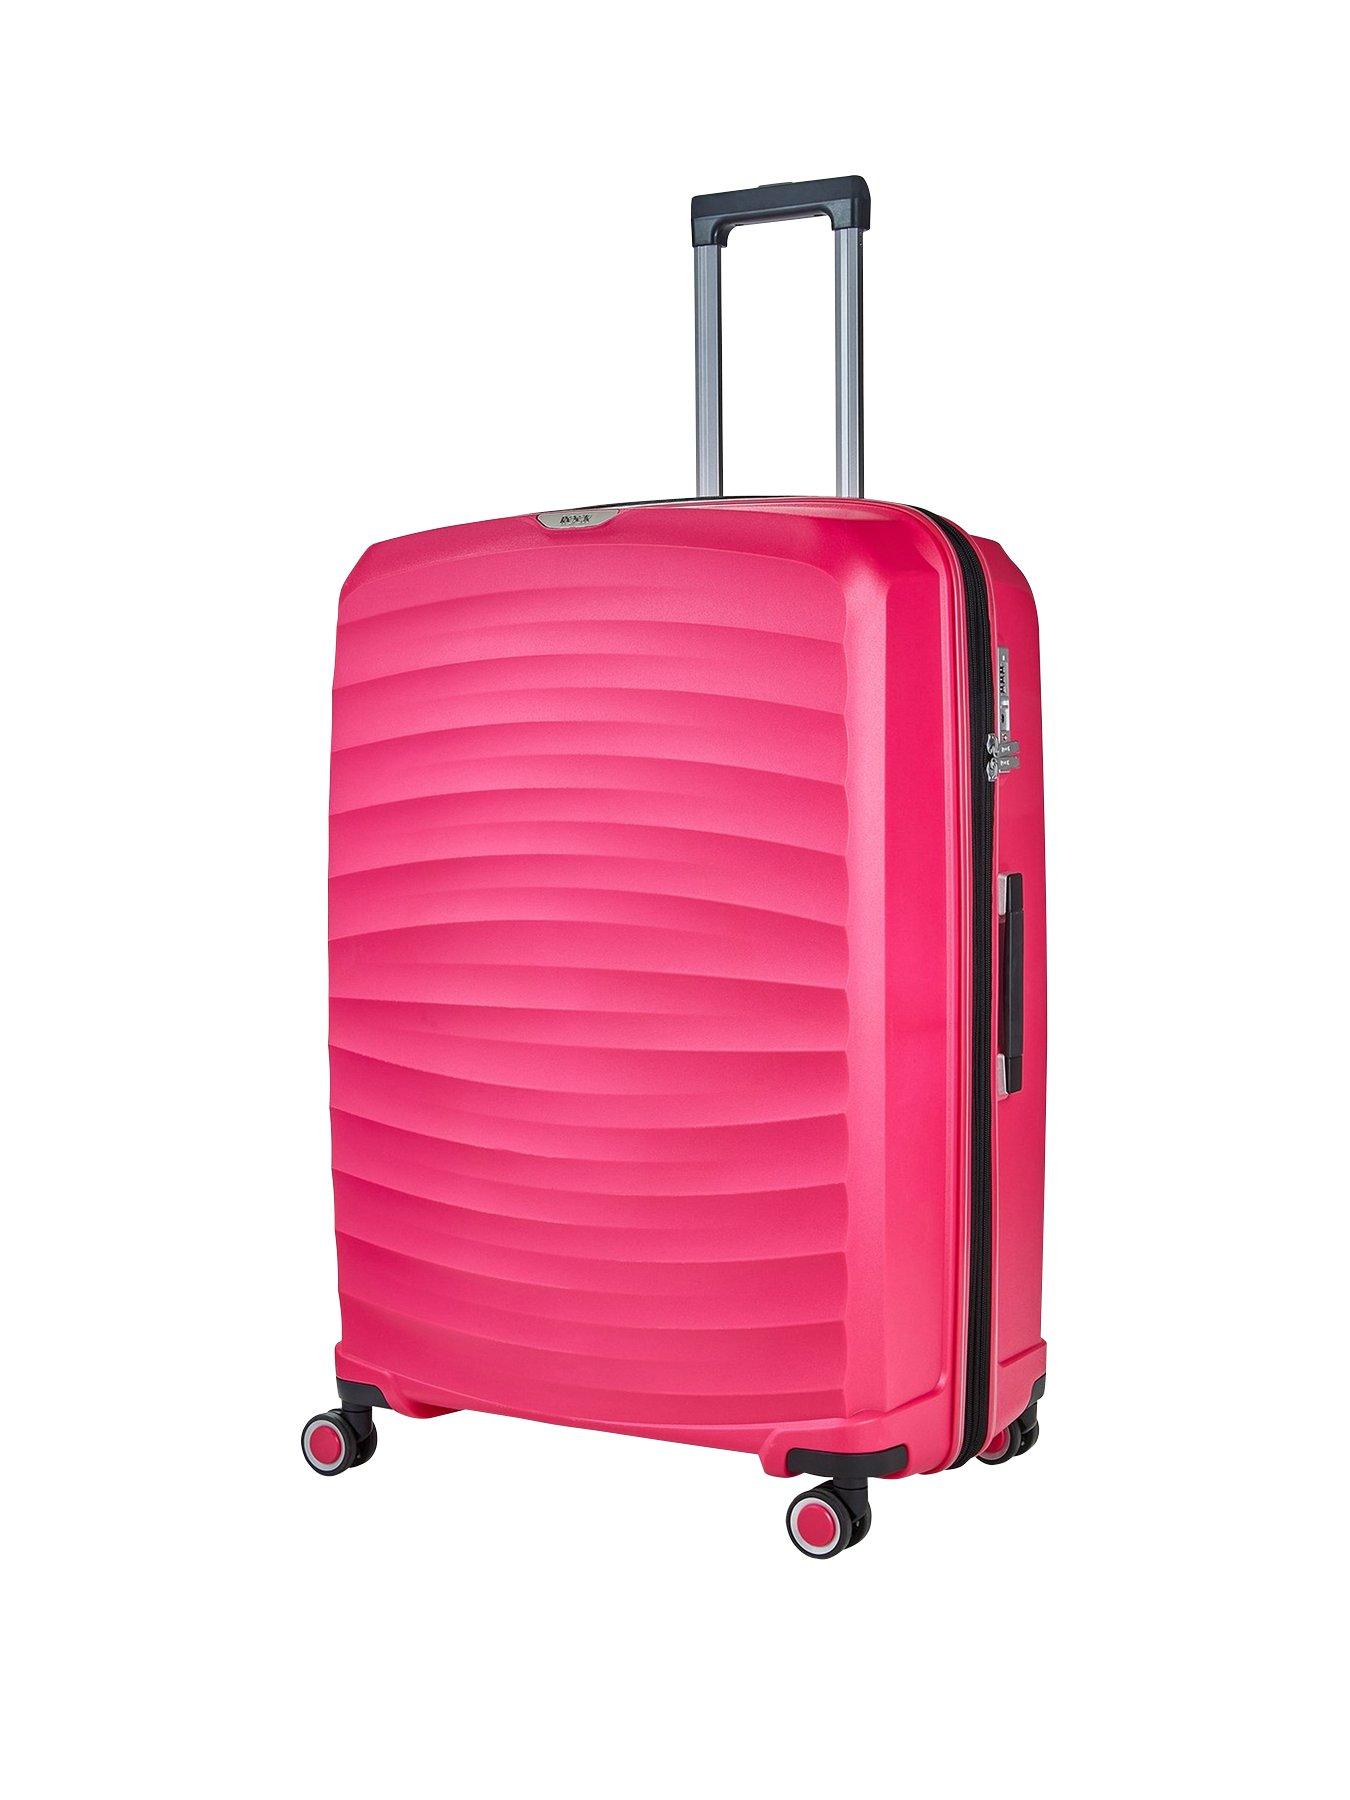 Rock Luggage Sunwave Large 8-Wheel Suitcase - Pink | very.co.uk